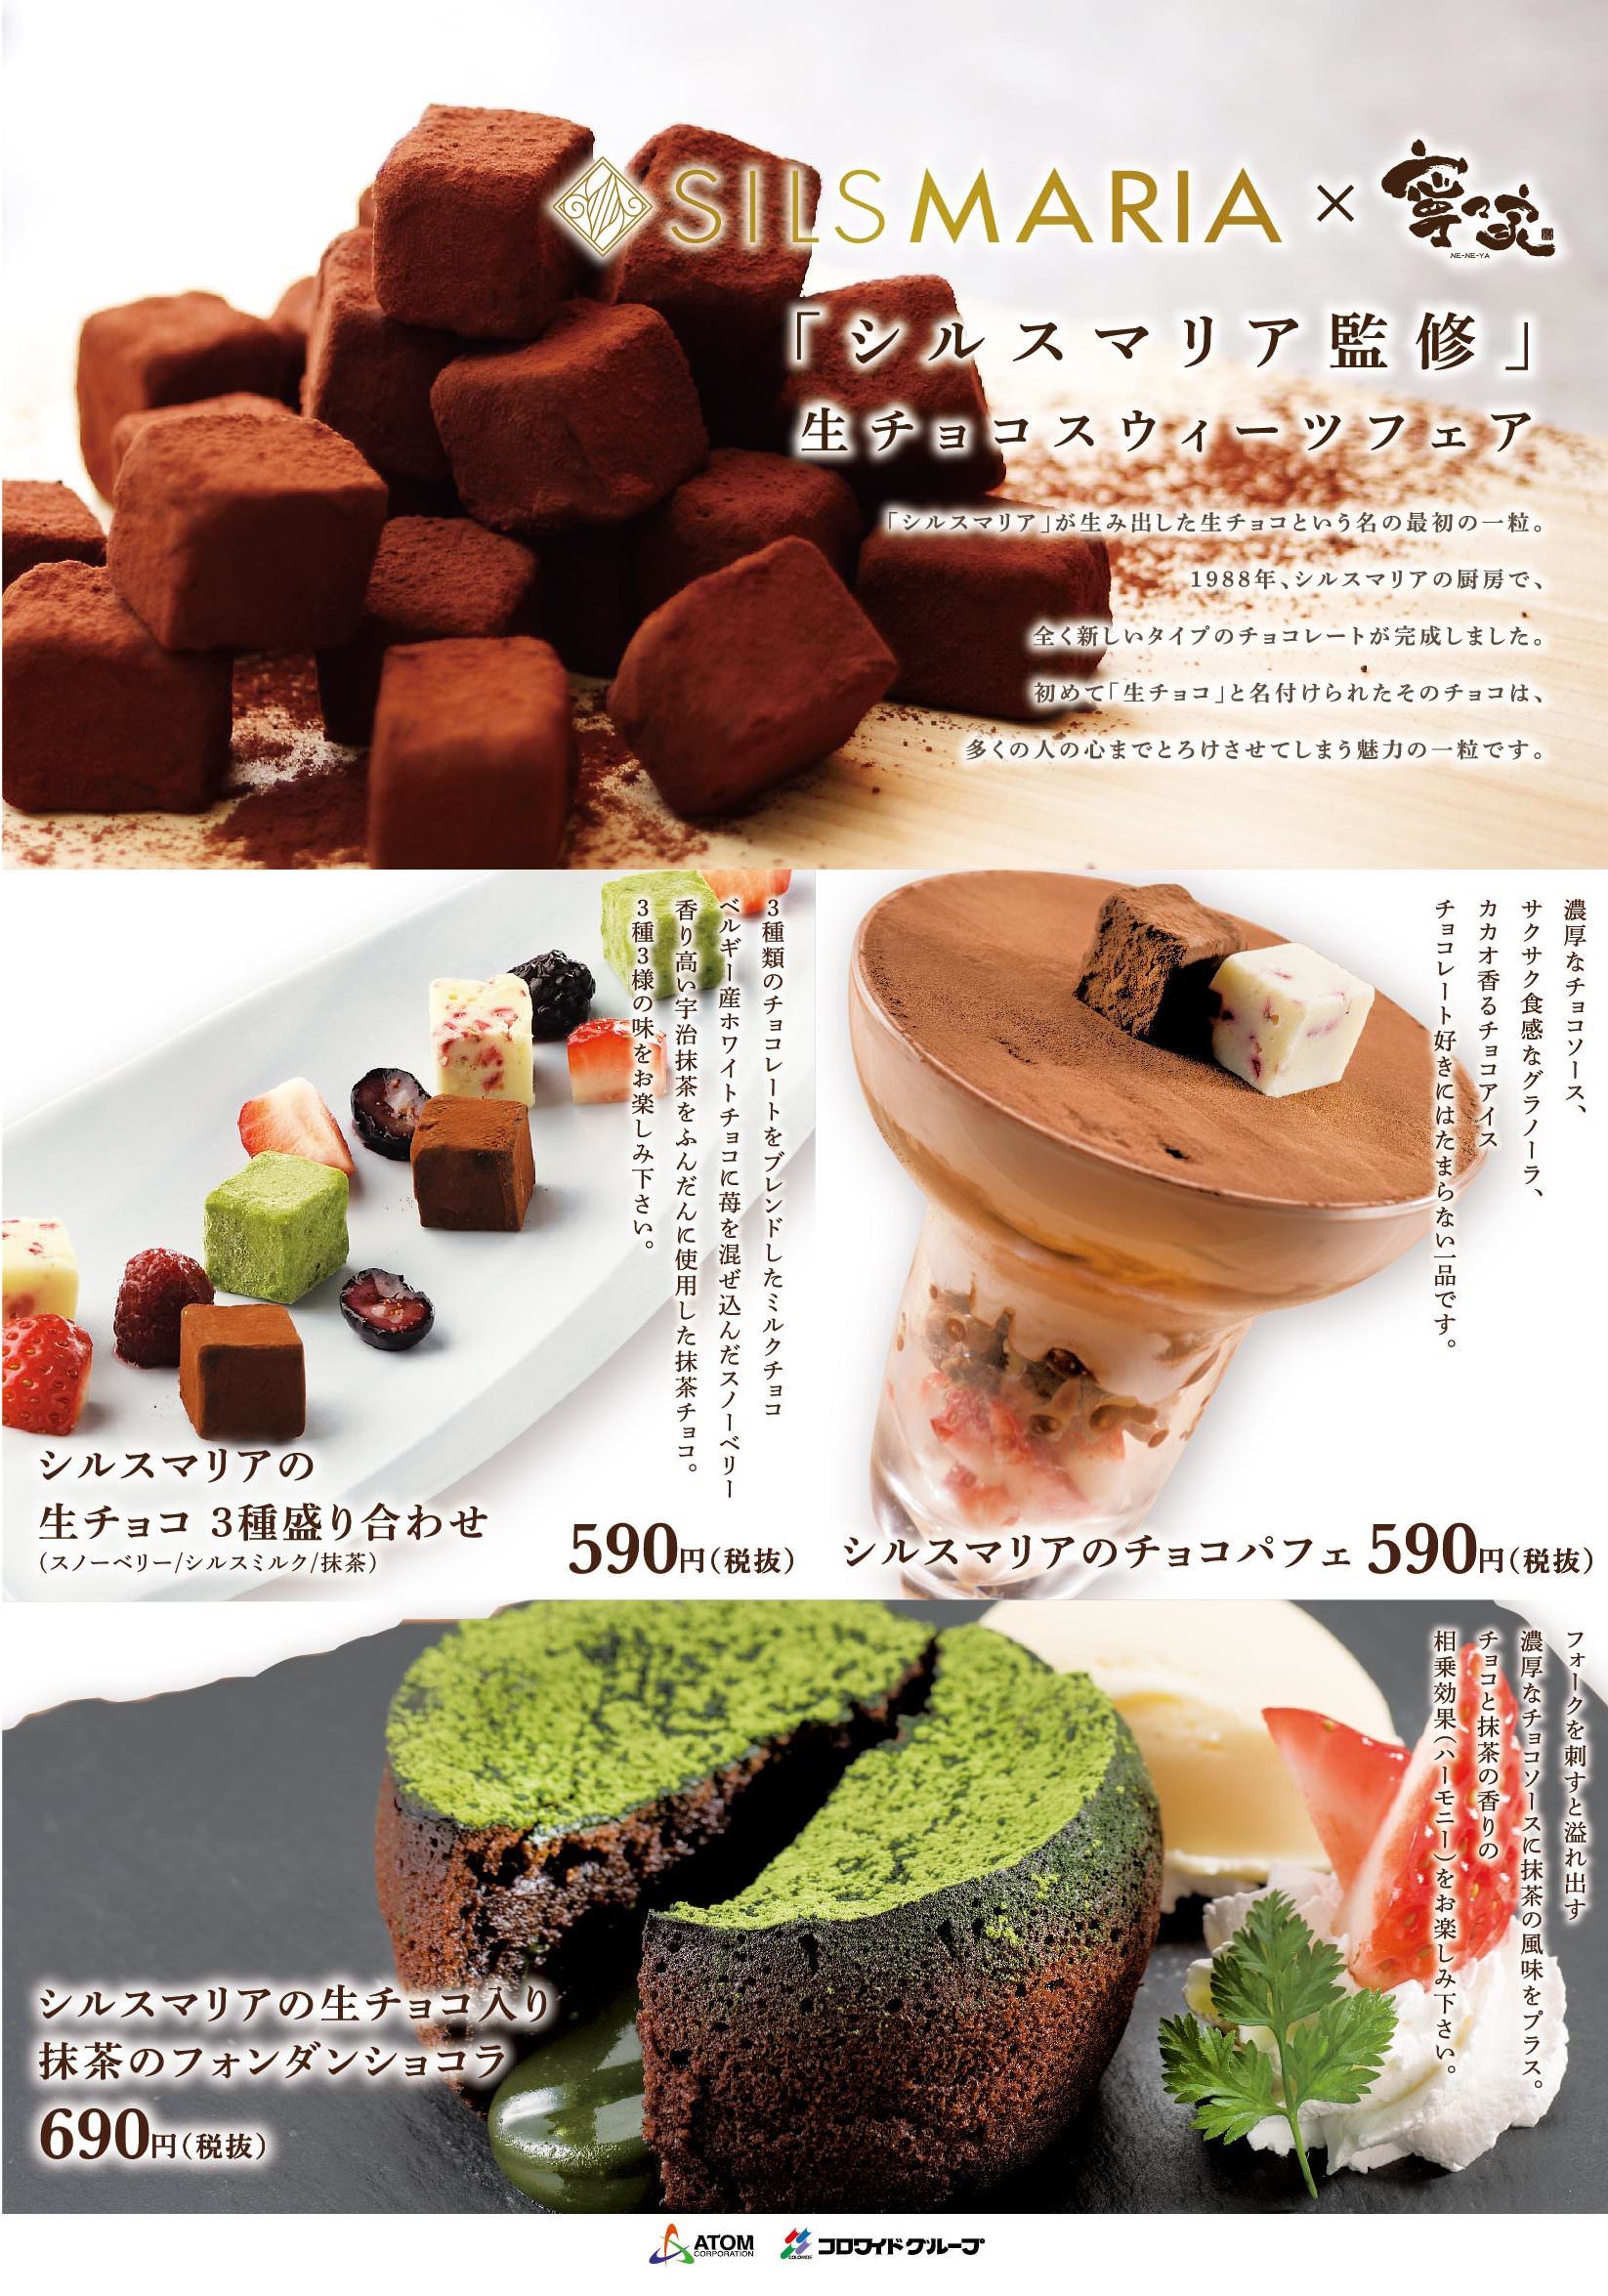 阪急阪神ホールディングスグループと農業ビジネスで業務提携
　～姫路市での高糖度ミニトマトの通年生産をサポート～